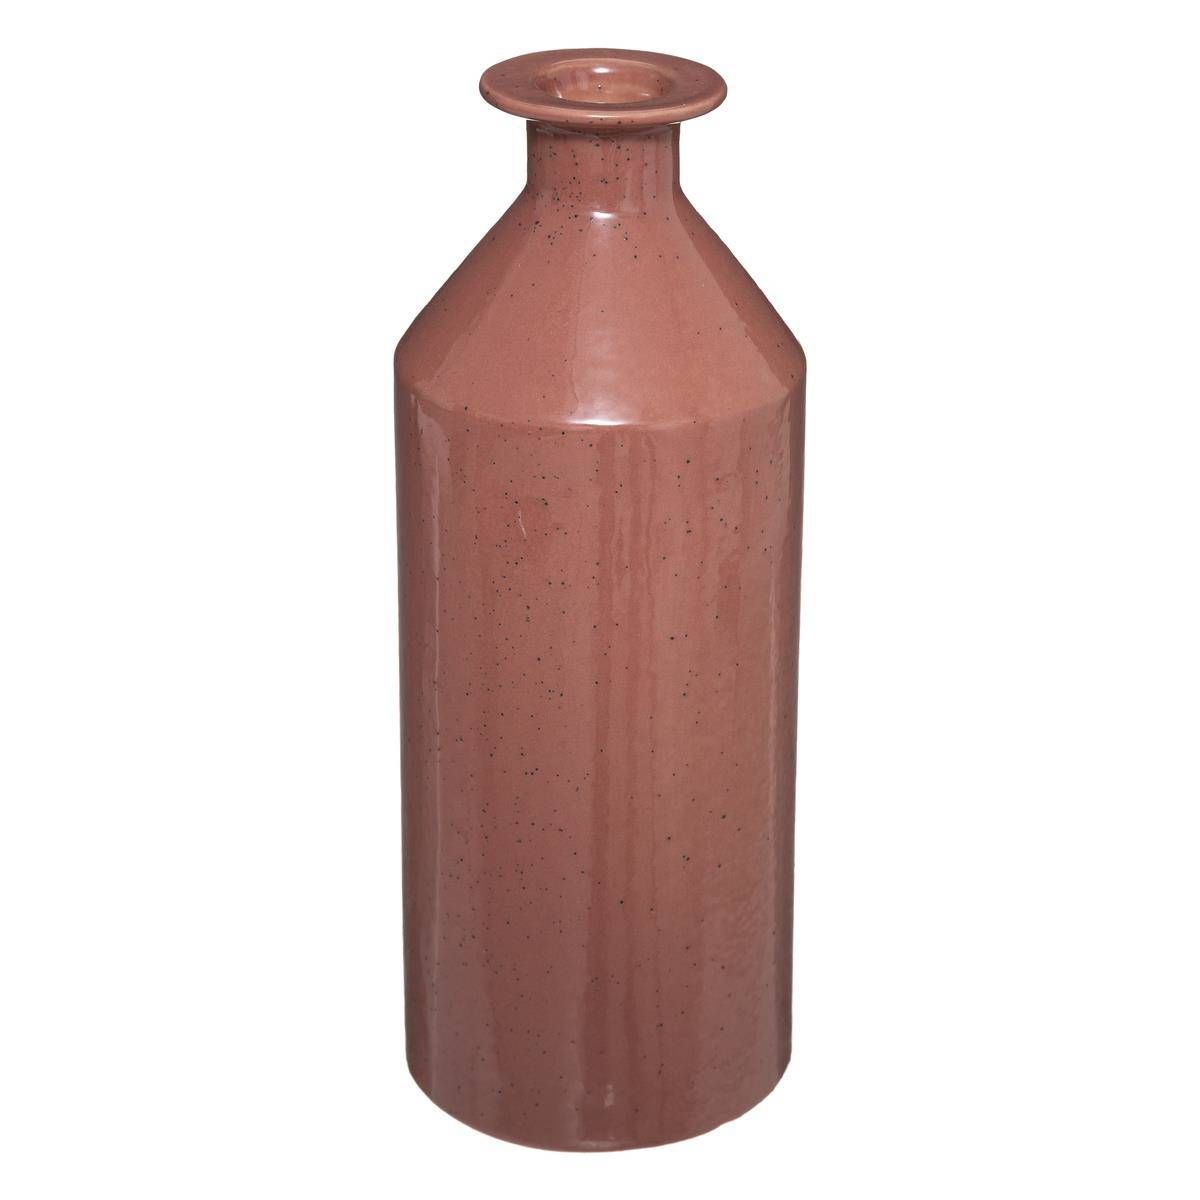 Atmosphera Červená keramická váza, 21,5 cm - EDAXO.CZ s.r.o.